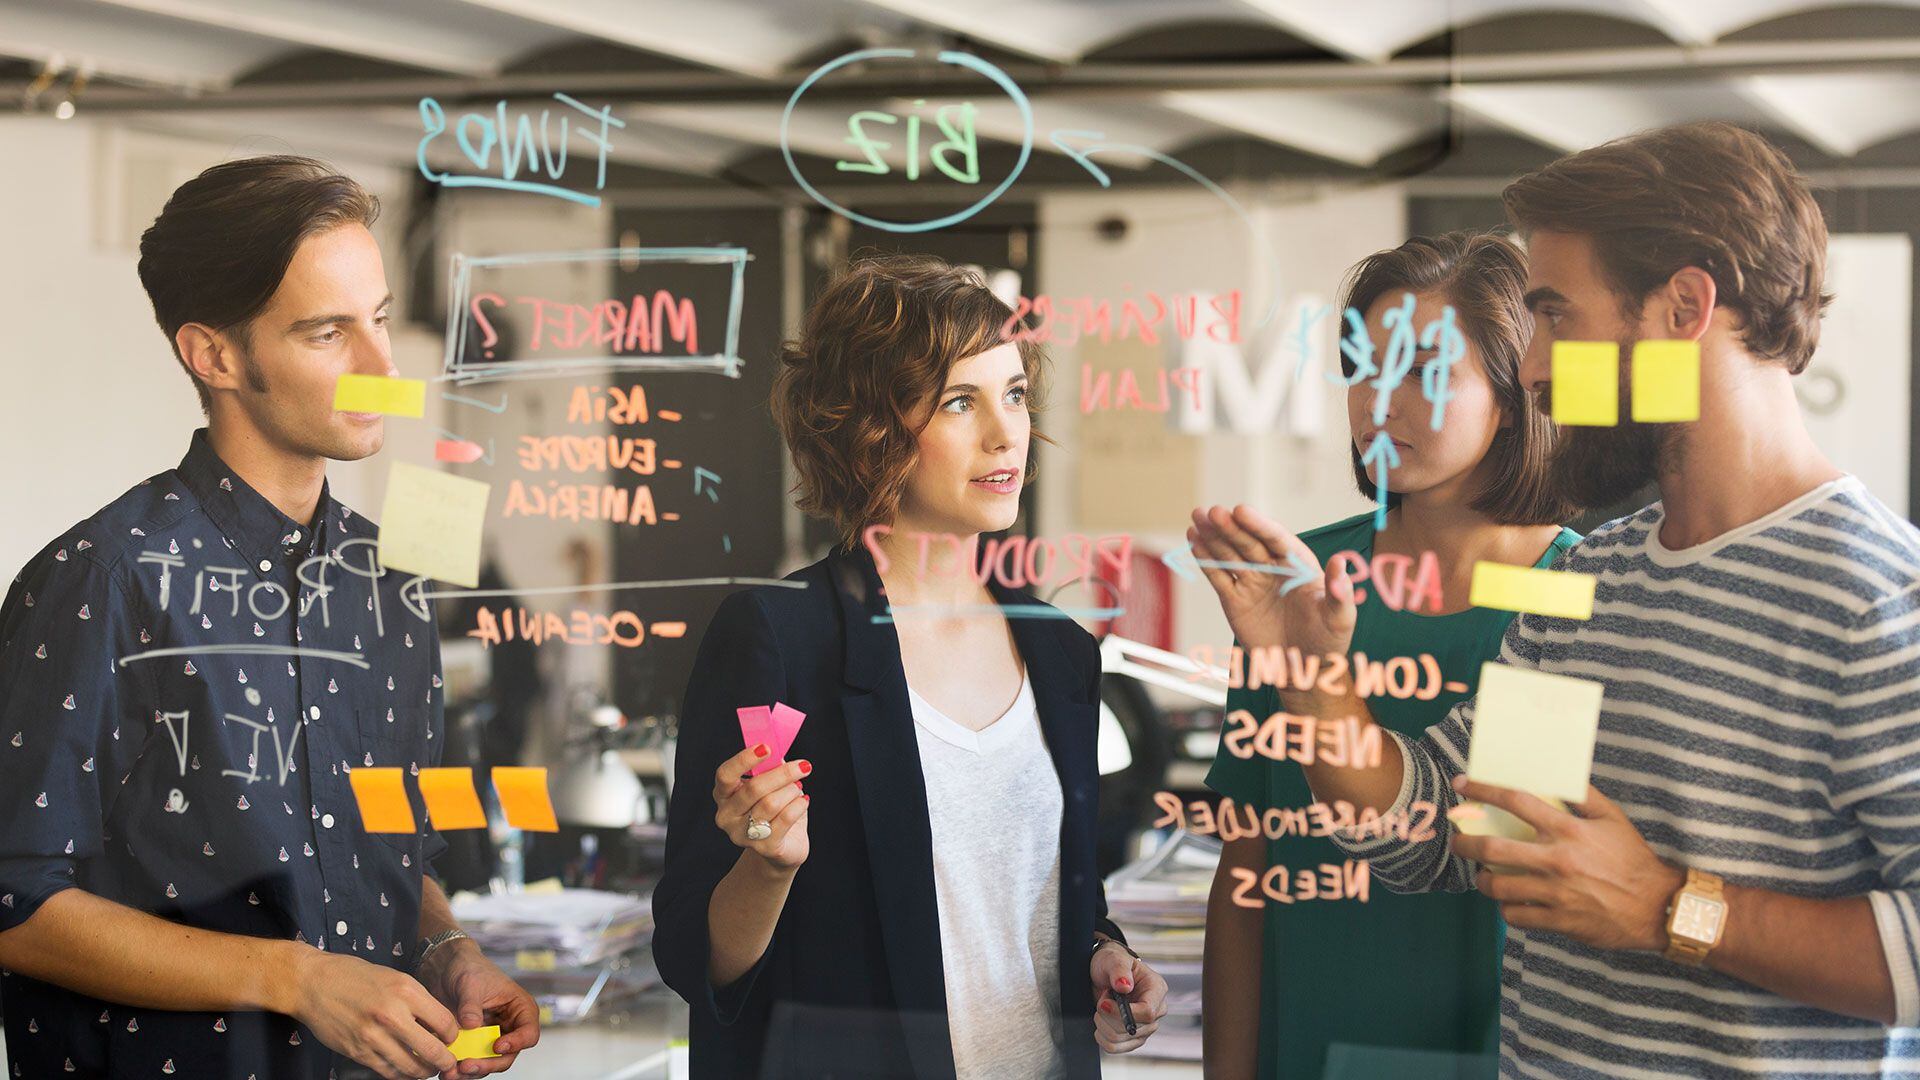 El ecosistema laboral híbrido, con modelos productivos y flexible, requiere nuevos perfiles y maneras de liderazgo (Getty Images)